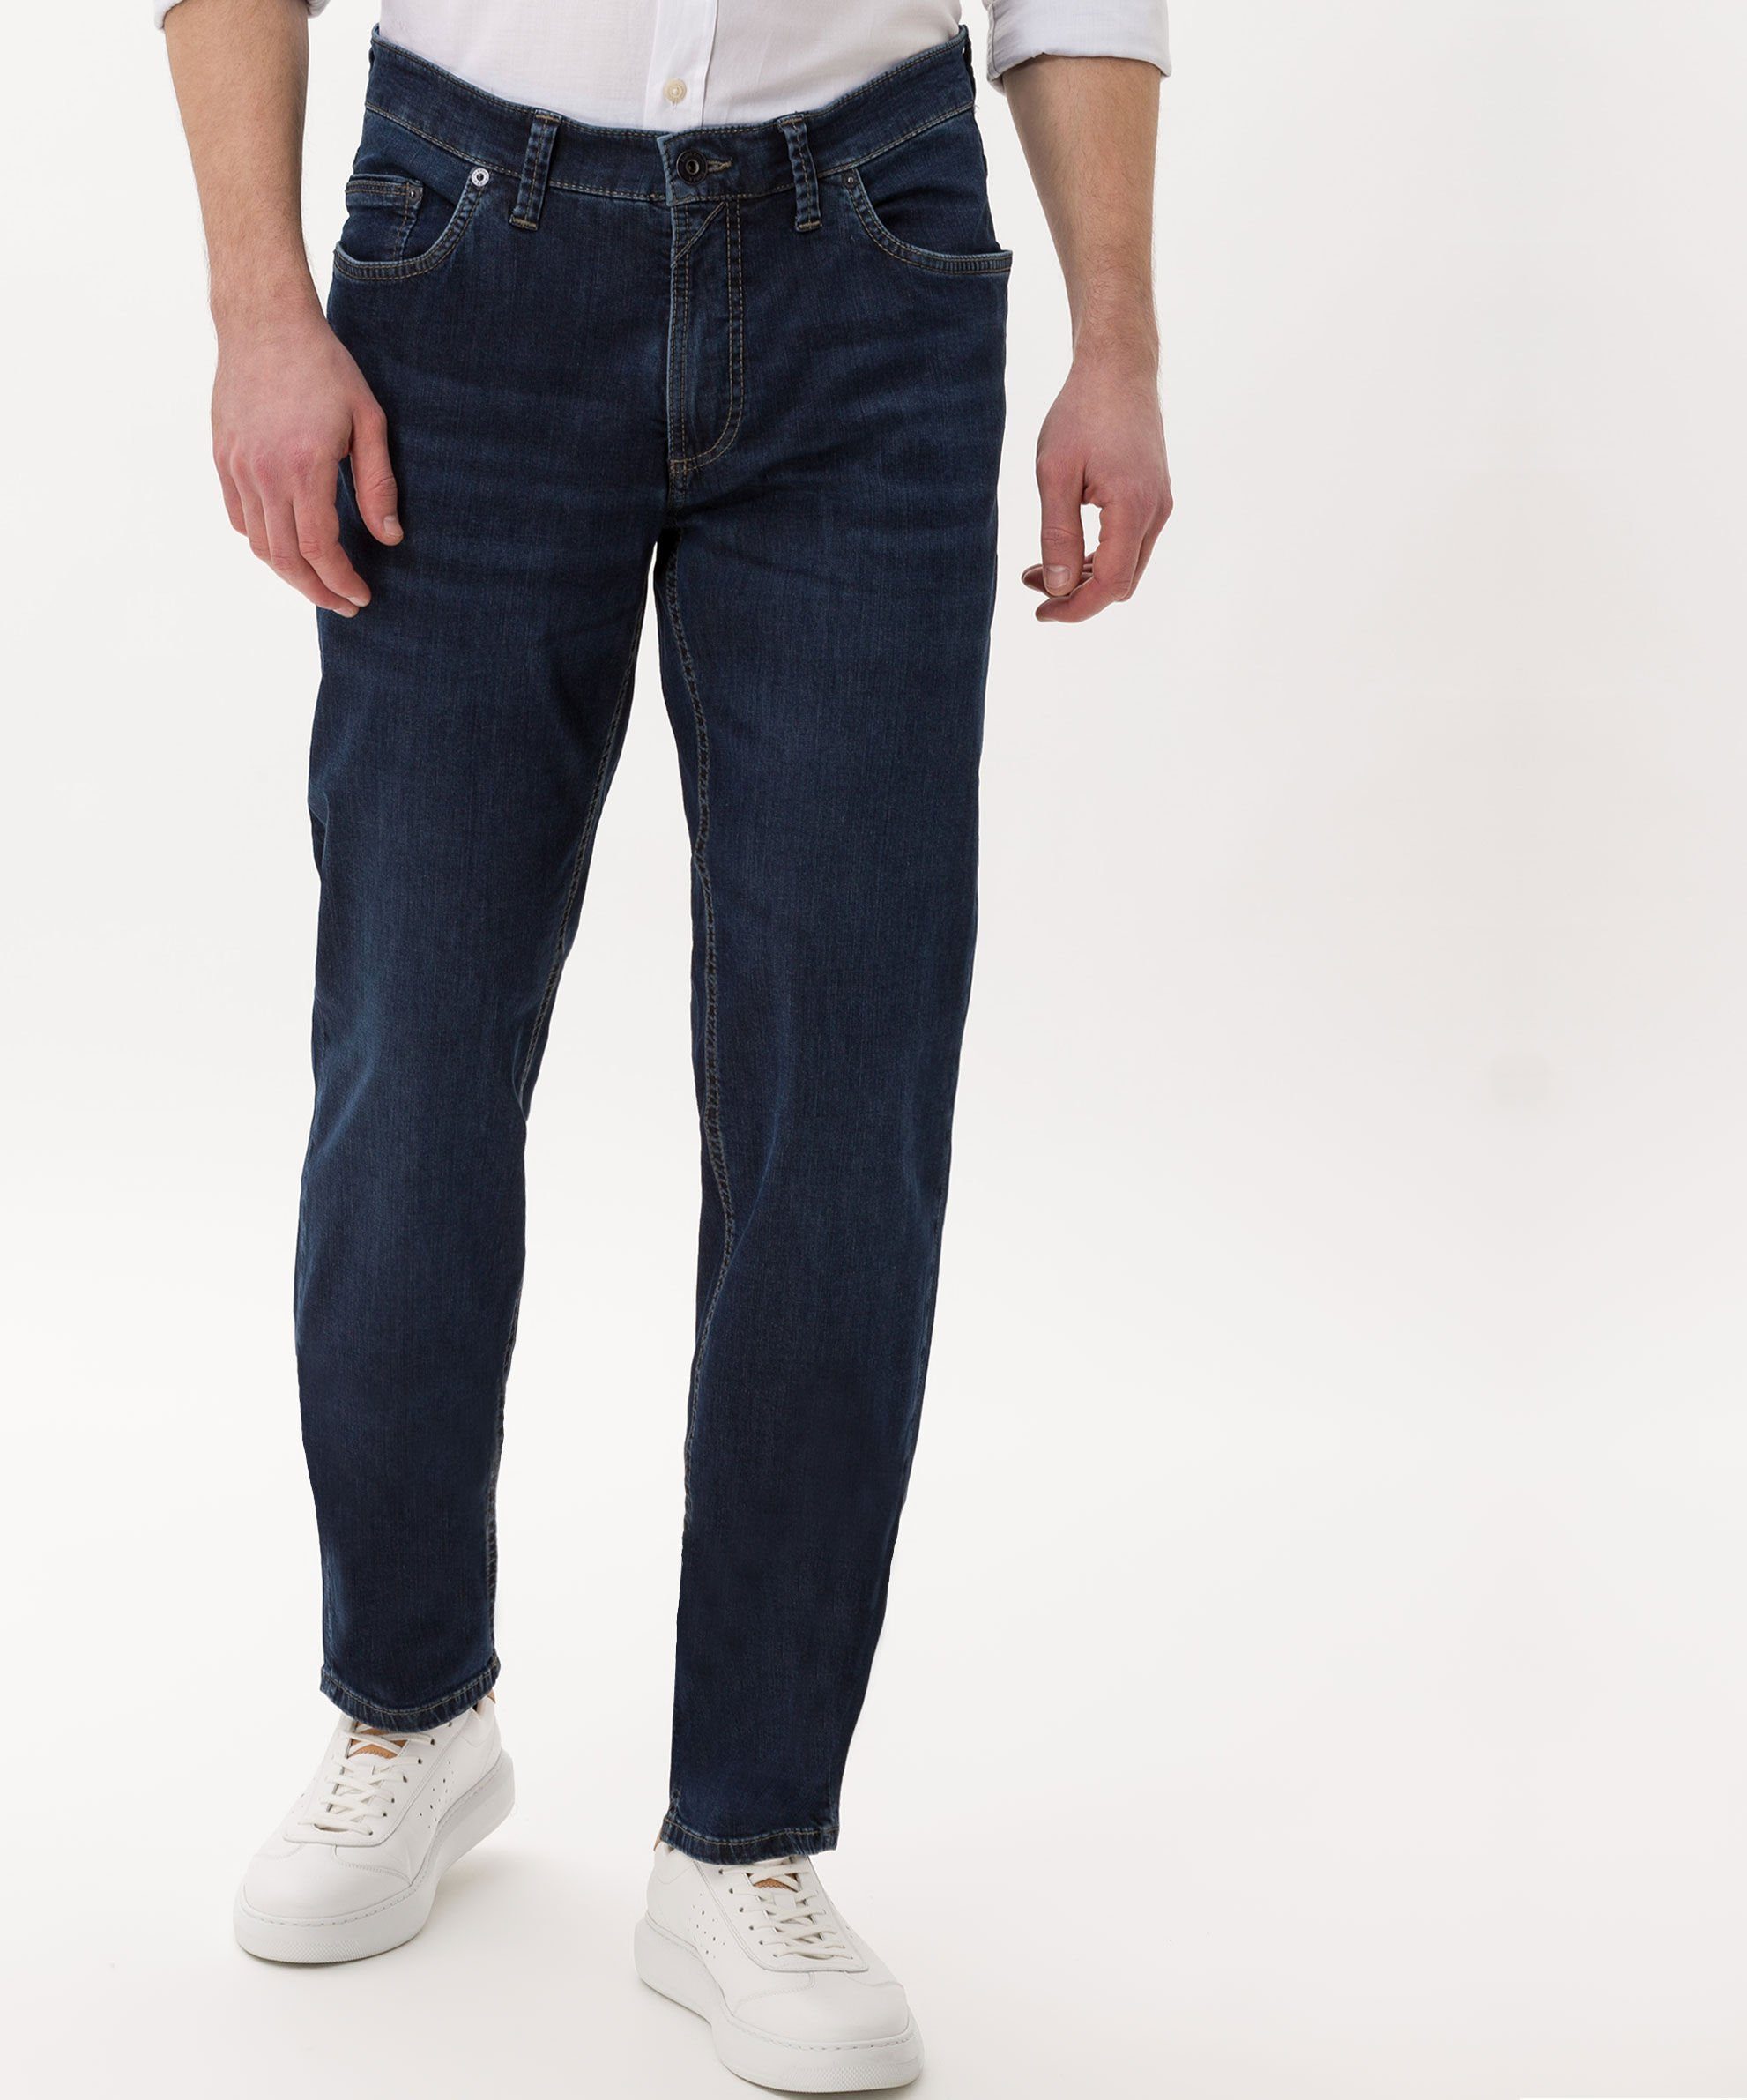 EUREX by BRAX 5-Pocket-Jeans Style Luke blue